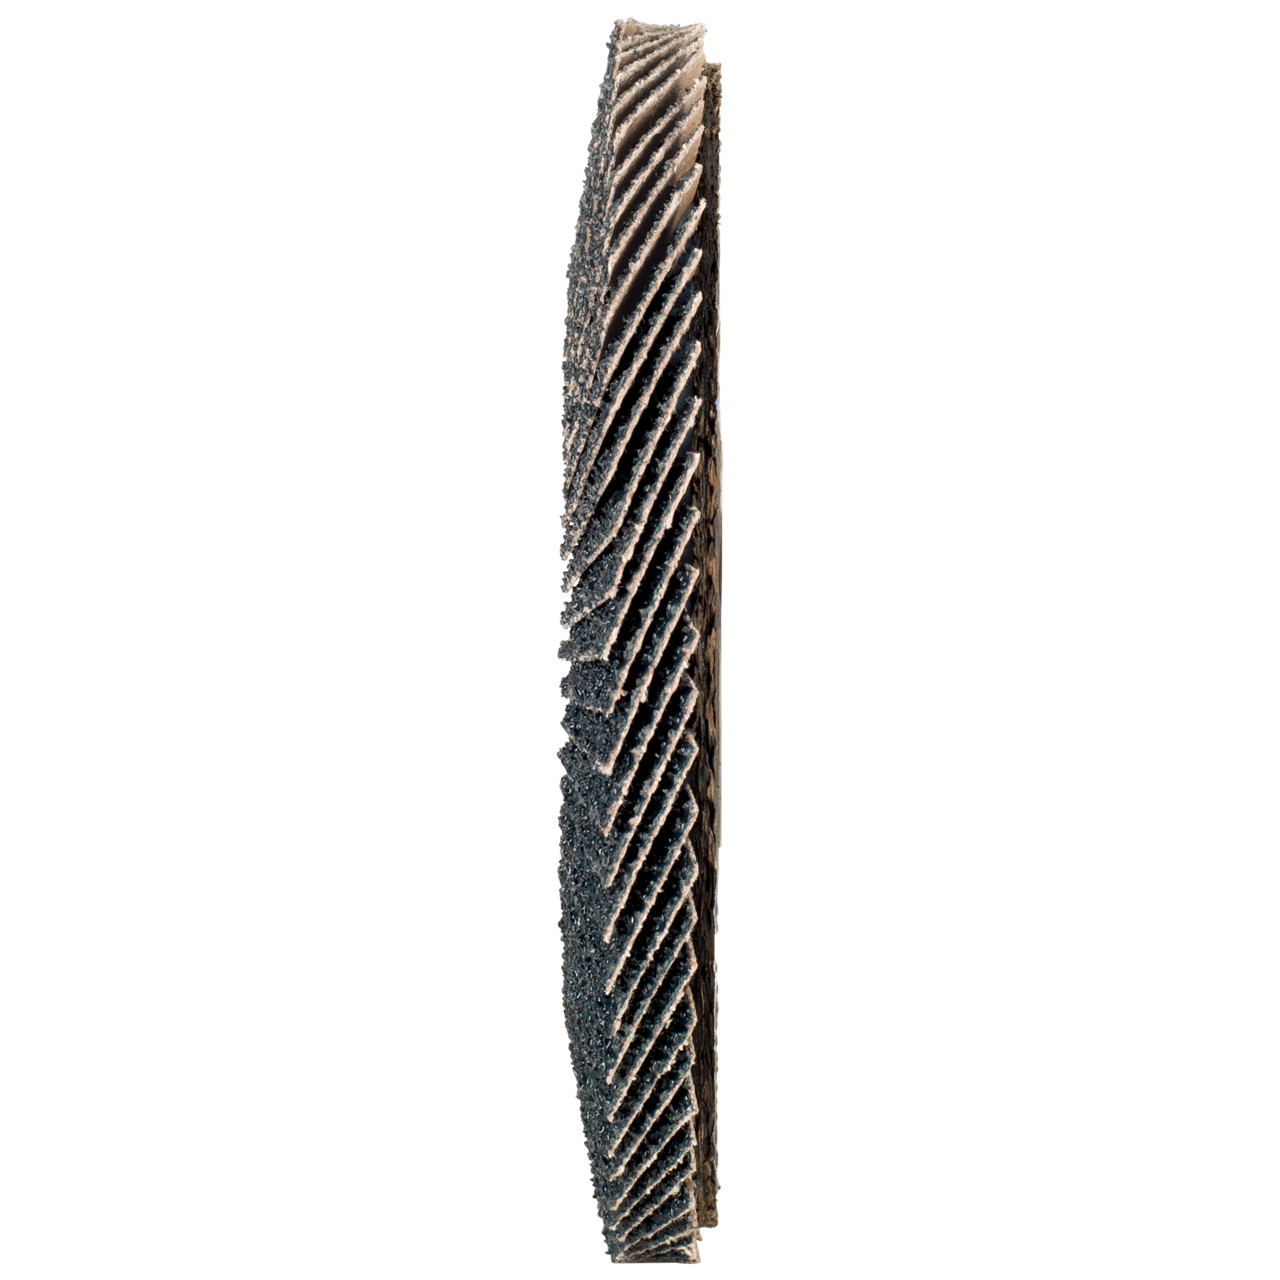 Tyrolit Gekartelde borgring DxH 125x22,2 2in1 voor staal &amp; roestvrij staal, P120, vorm: 27A - offset versie (glasvezeldrager huisversie), Art. 643805